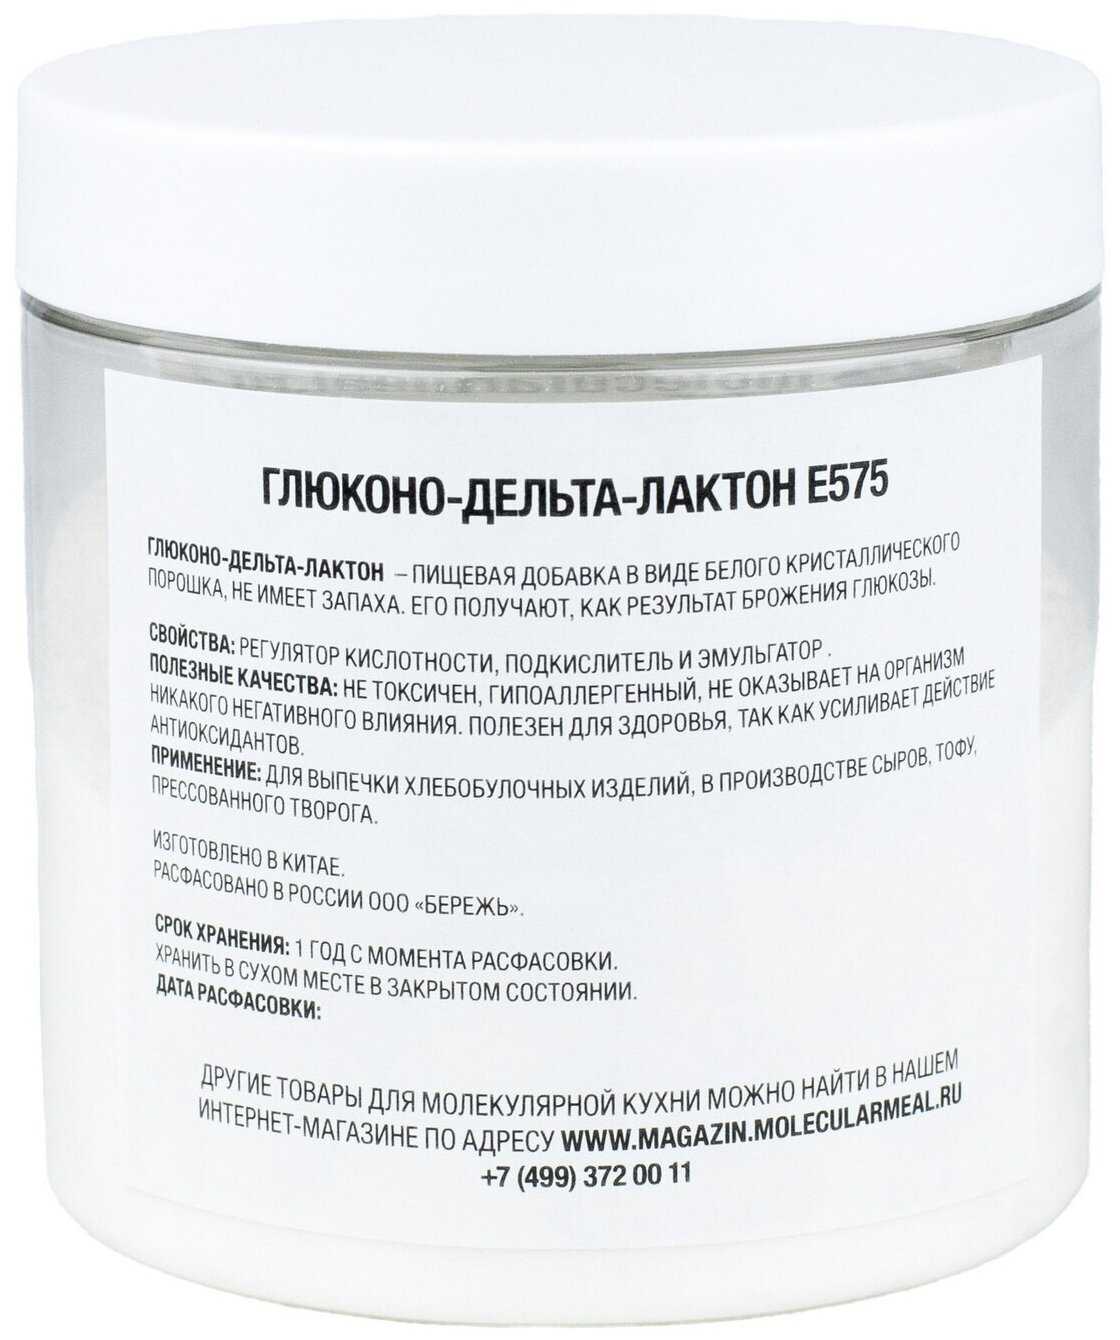 Пищевая добавка е575 (глюконо-d-лактон) — польза и вред стабилизатора-эмульгатора и регулятора кислотности